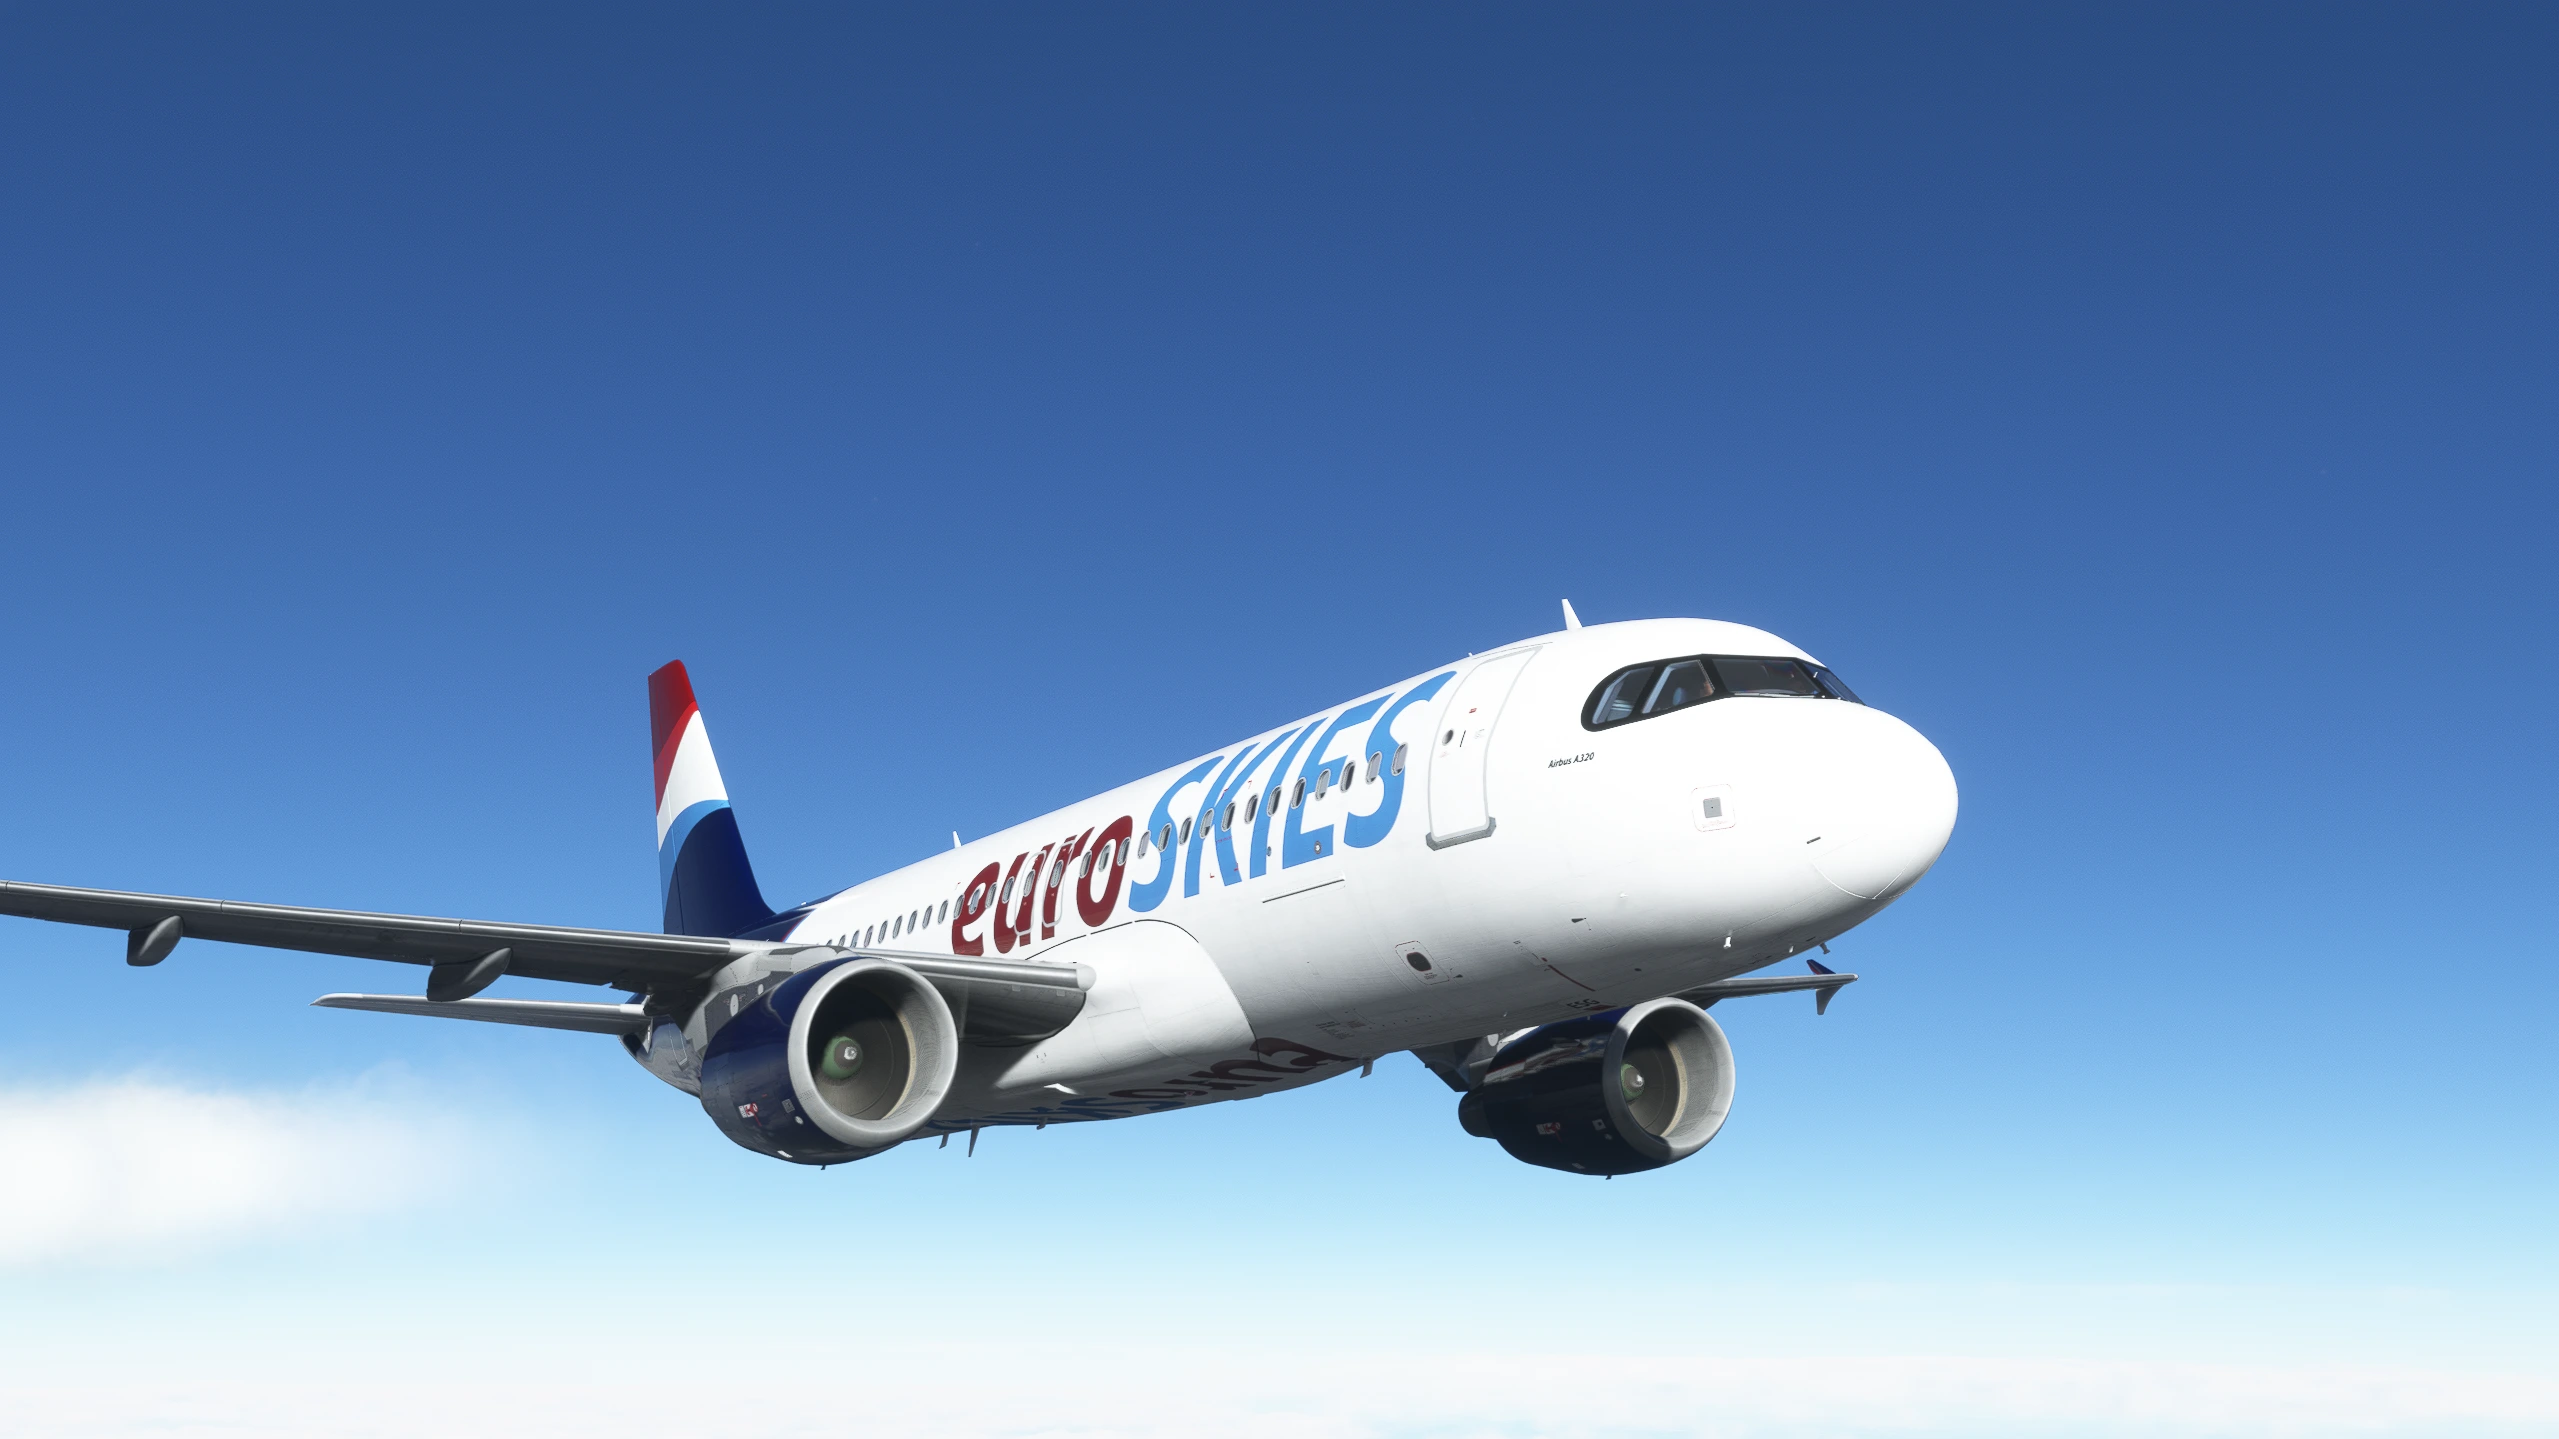 euroSKIES Airbus A320 cruising in blue skies